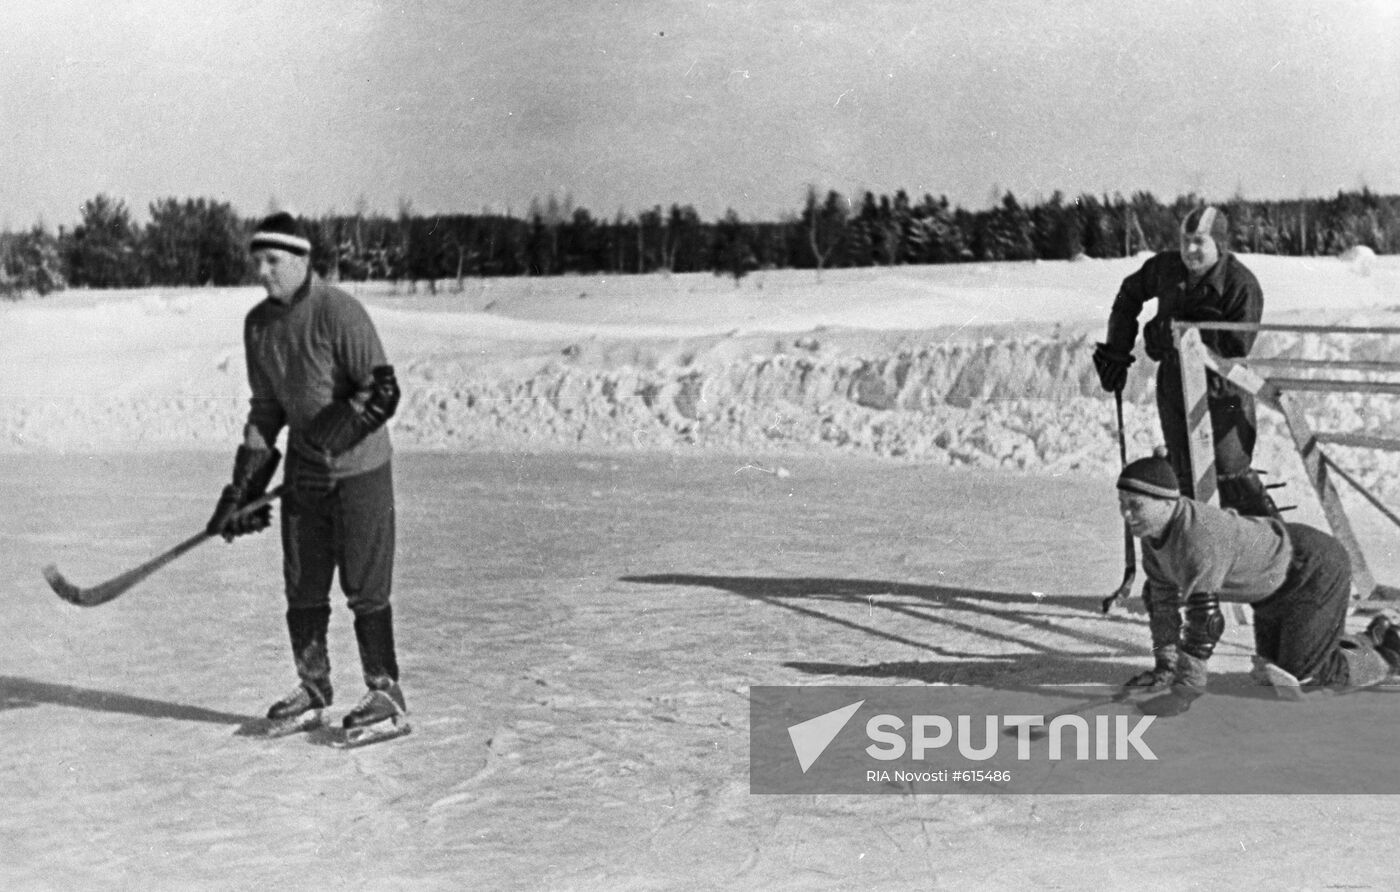 Yuri Gagarin, Alexey Leonov and Pavel Popovich play hockey